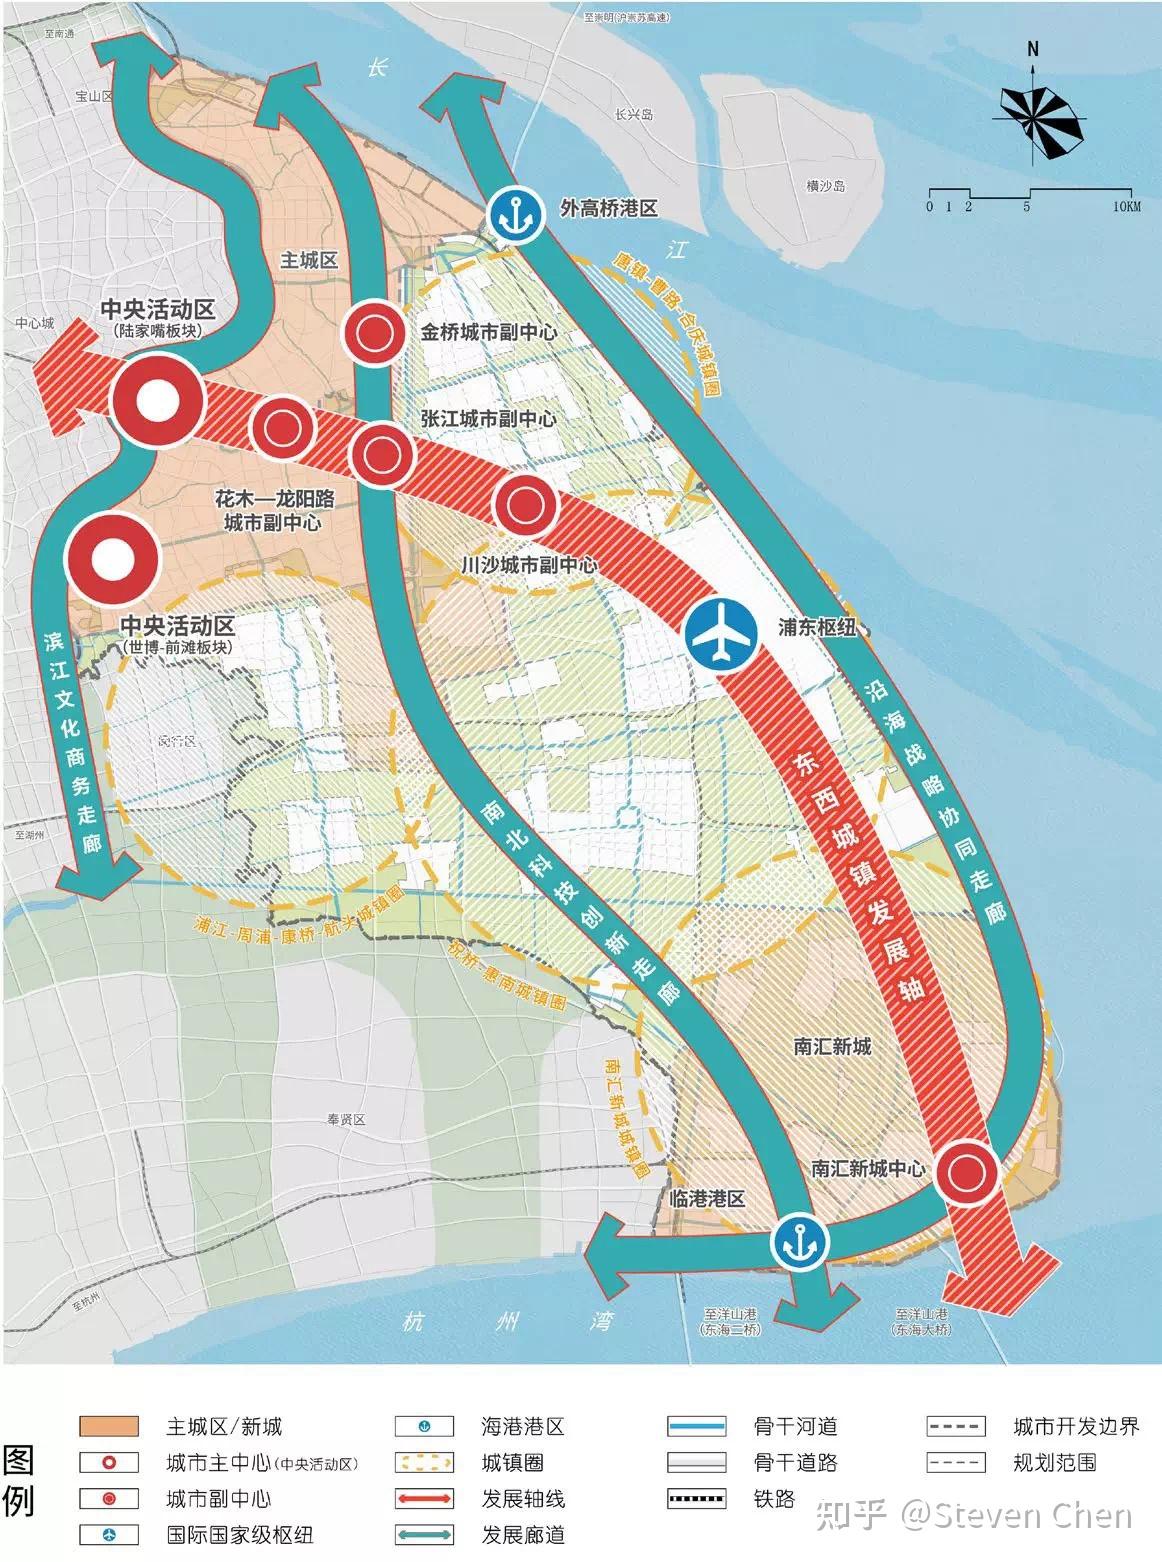 产业:从浦东2035规划图可以看出,祝桥位于东西城镇发展轴上.